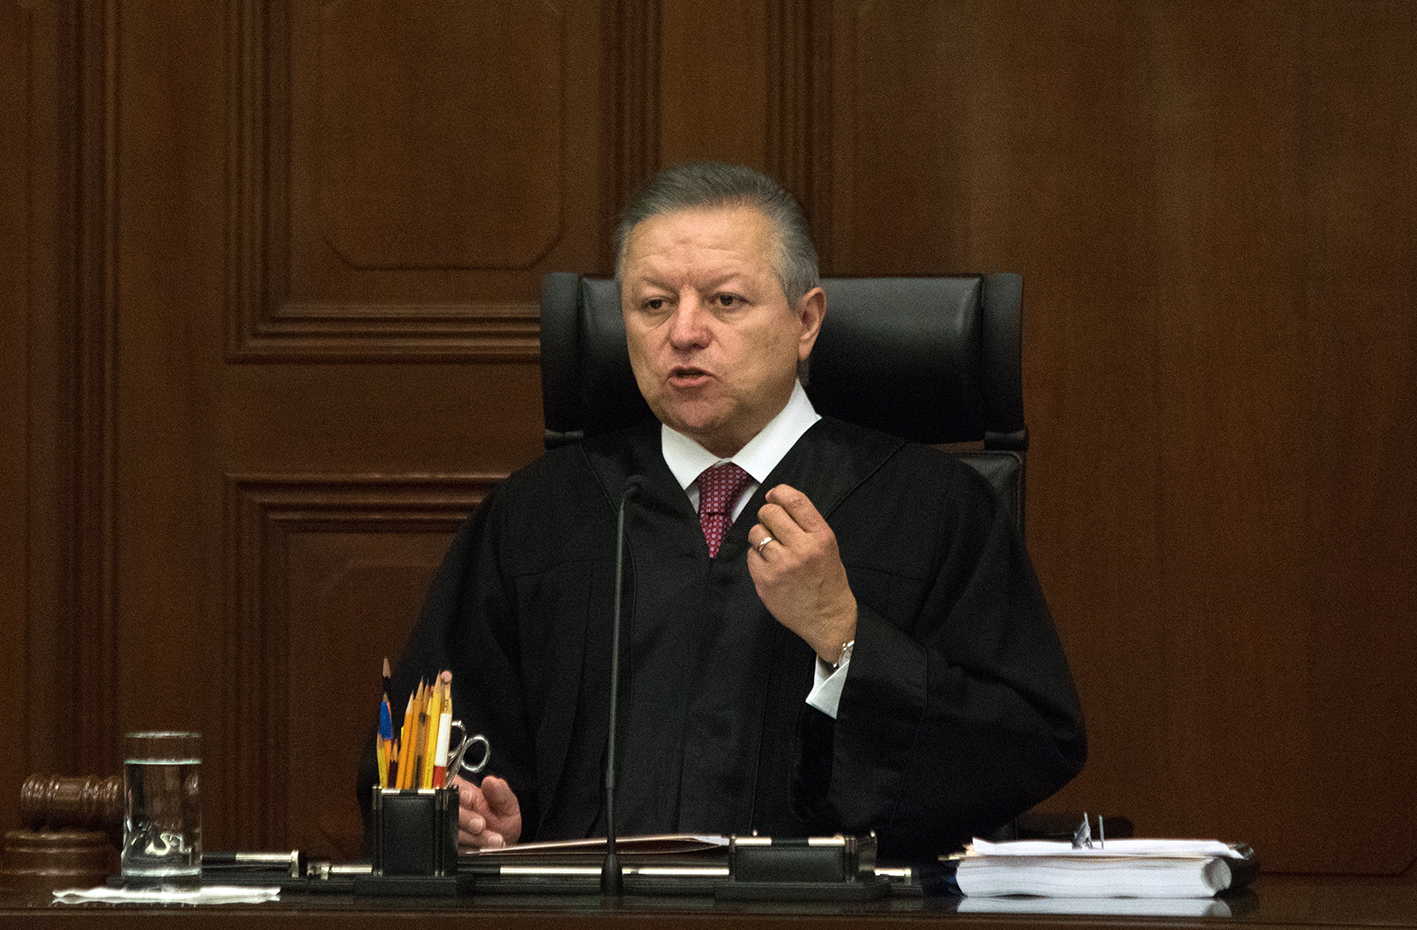 Photo of El Poder Judicial de la Federación defenderá la Independencia Judicial de todos y cada uno de los jueces: Ministro Presidente Arturo Zaldívar